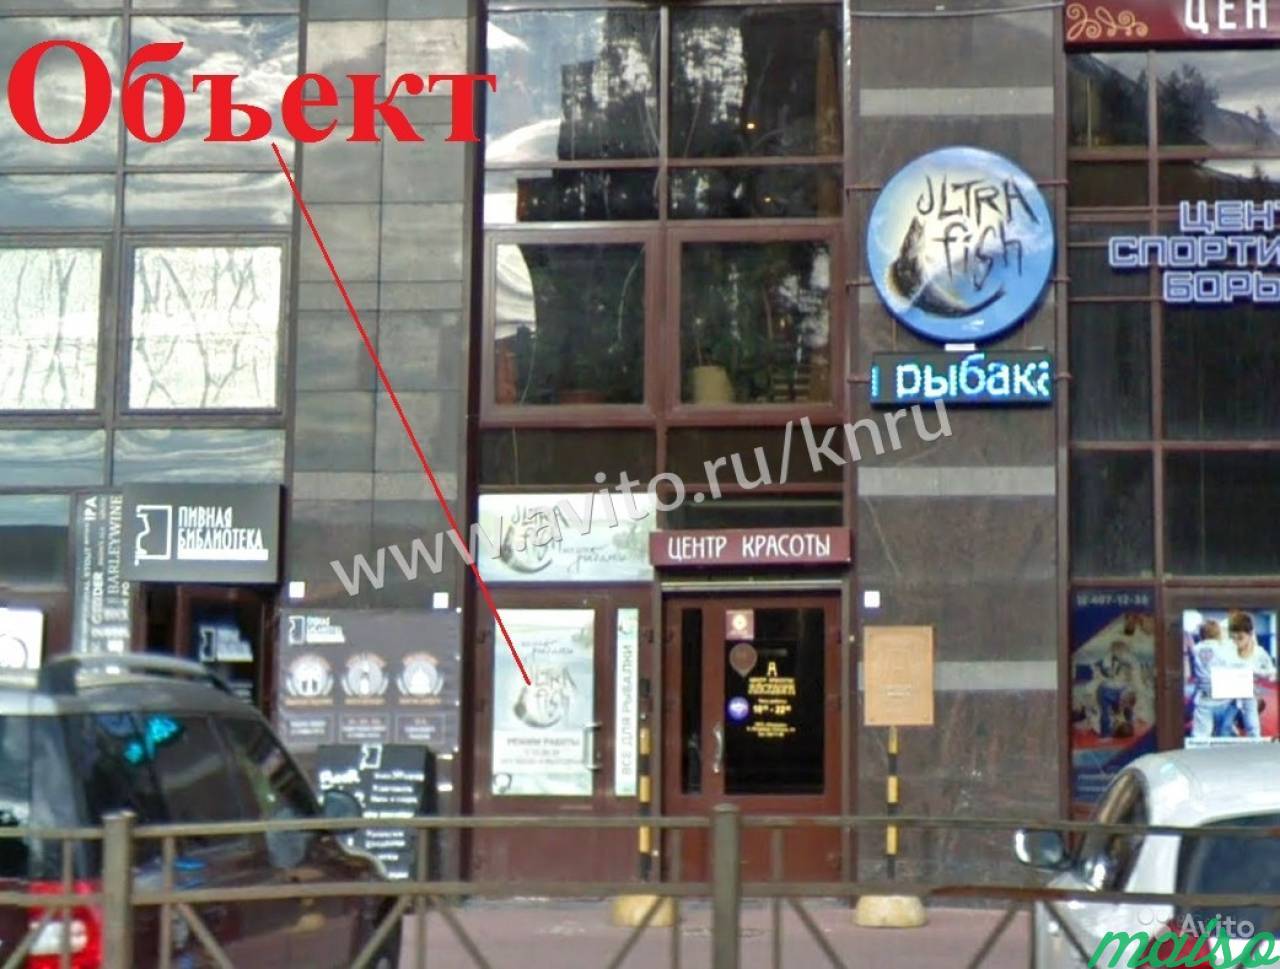 220м² активное торговое и ресторанное место в Санкт-Петербурге. Фото 1